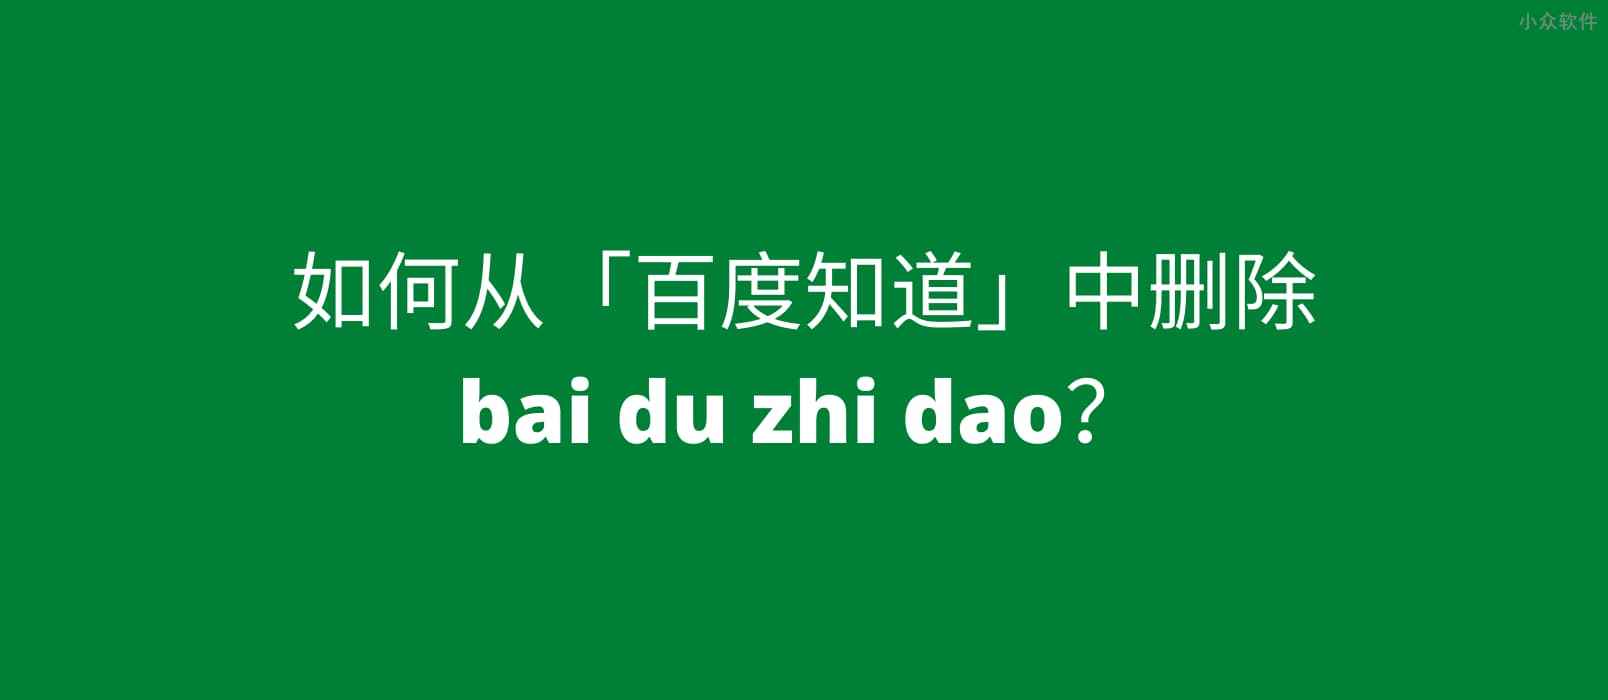 如何从「百度知道」中删除 bai du zhi dao？